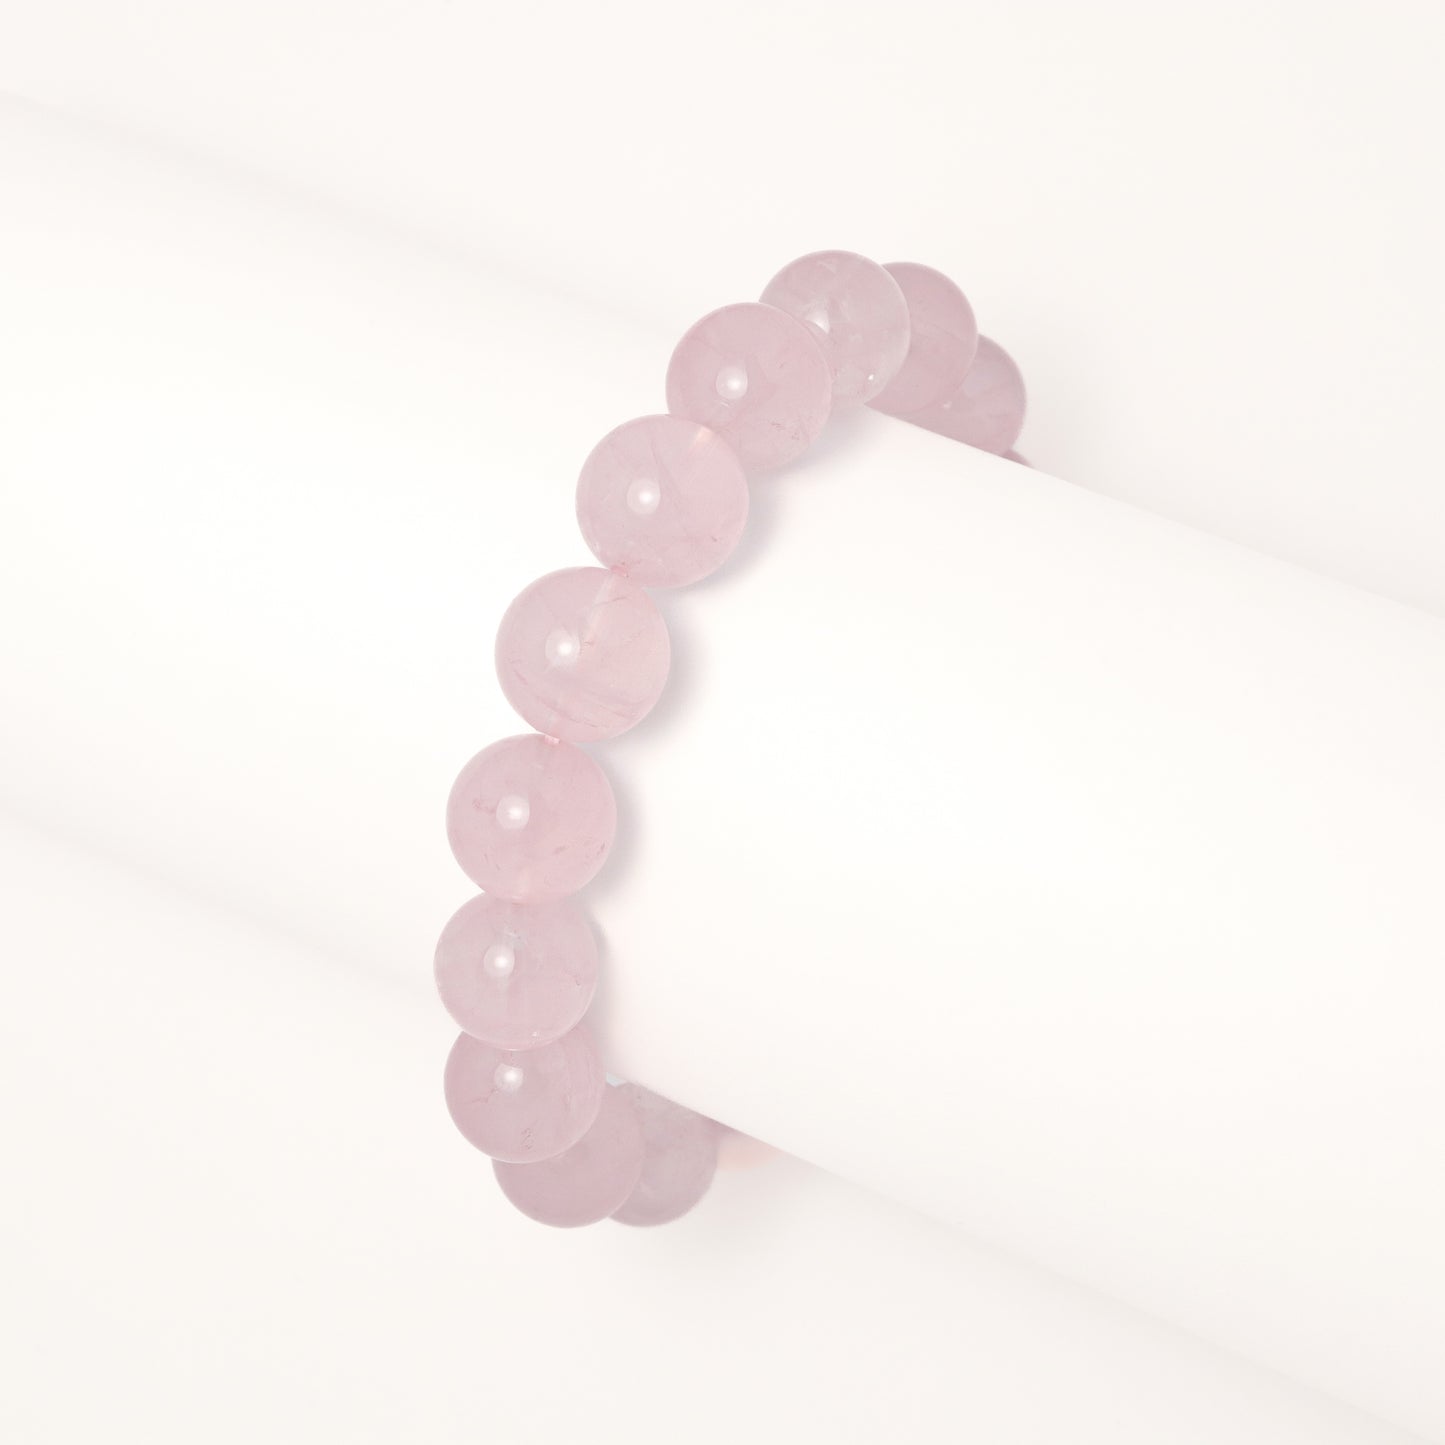 Aphrodite Love I - Grapefruit Rose Quartz Bracelet